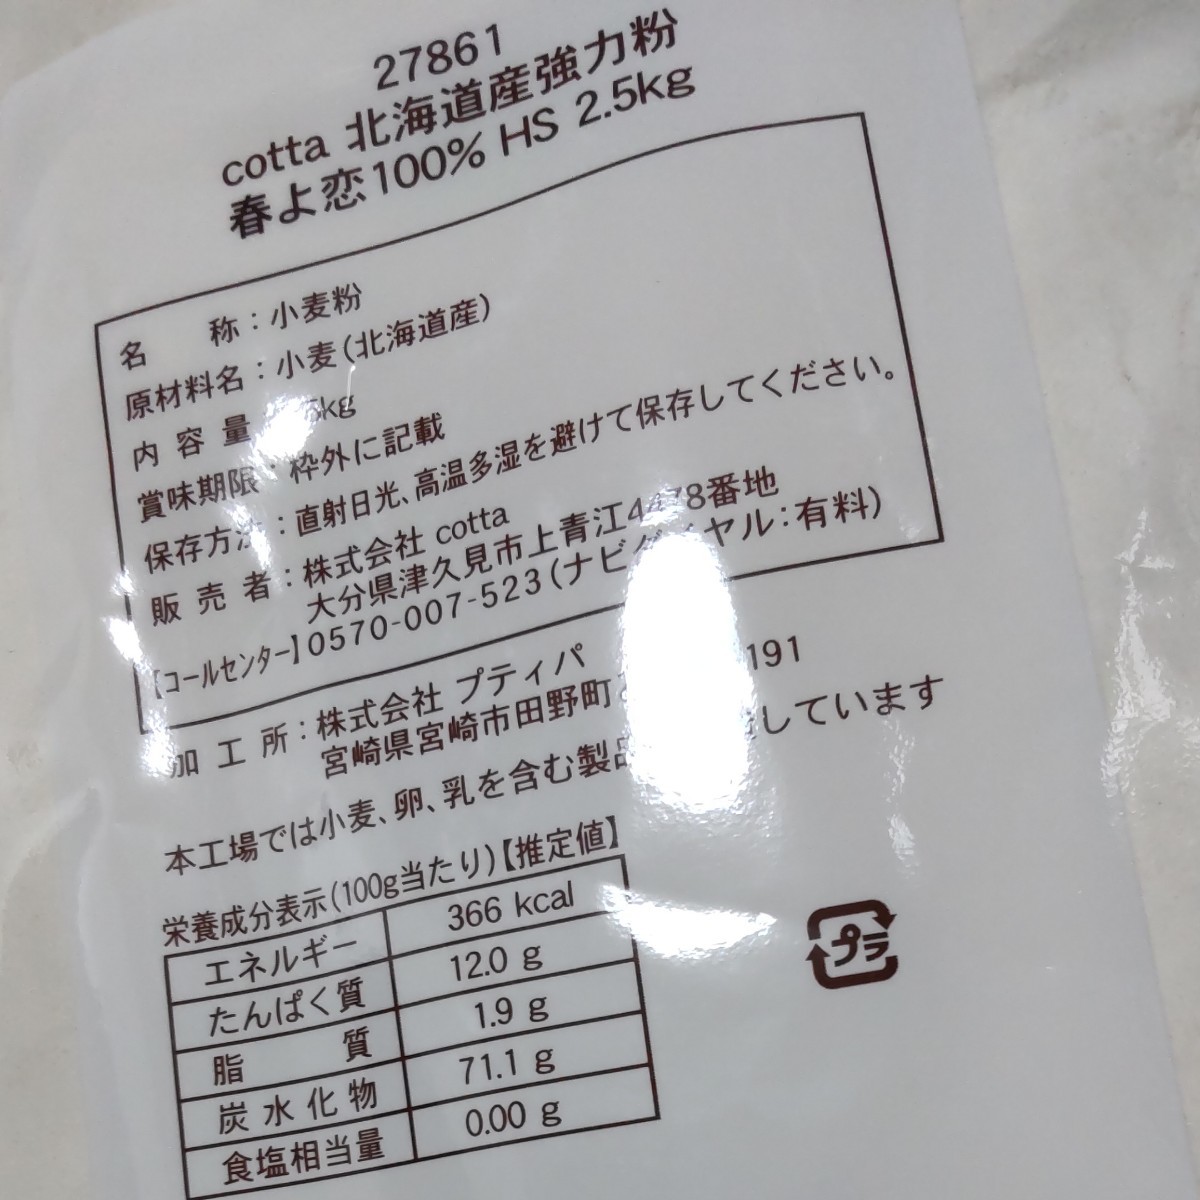 最も信頼できる 強力粉 キタノカオリ100 北海道産パン用小麦粉 2.5kg